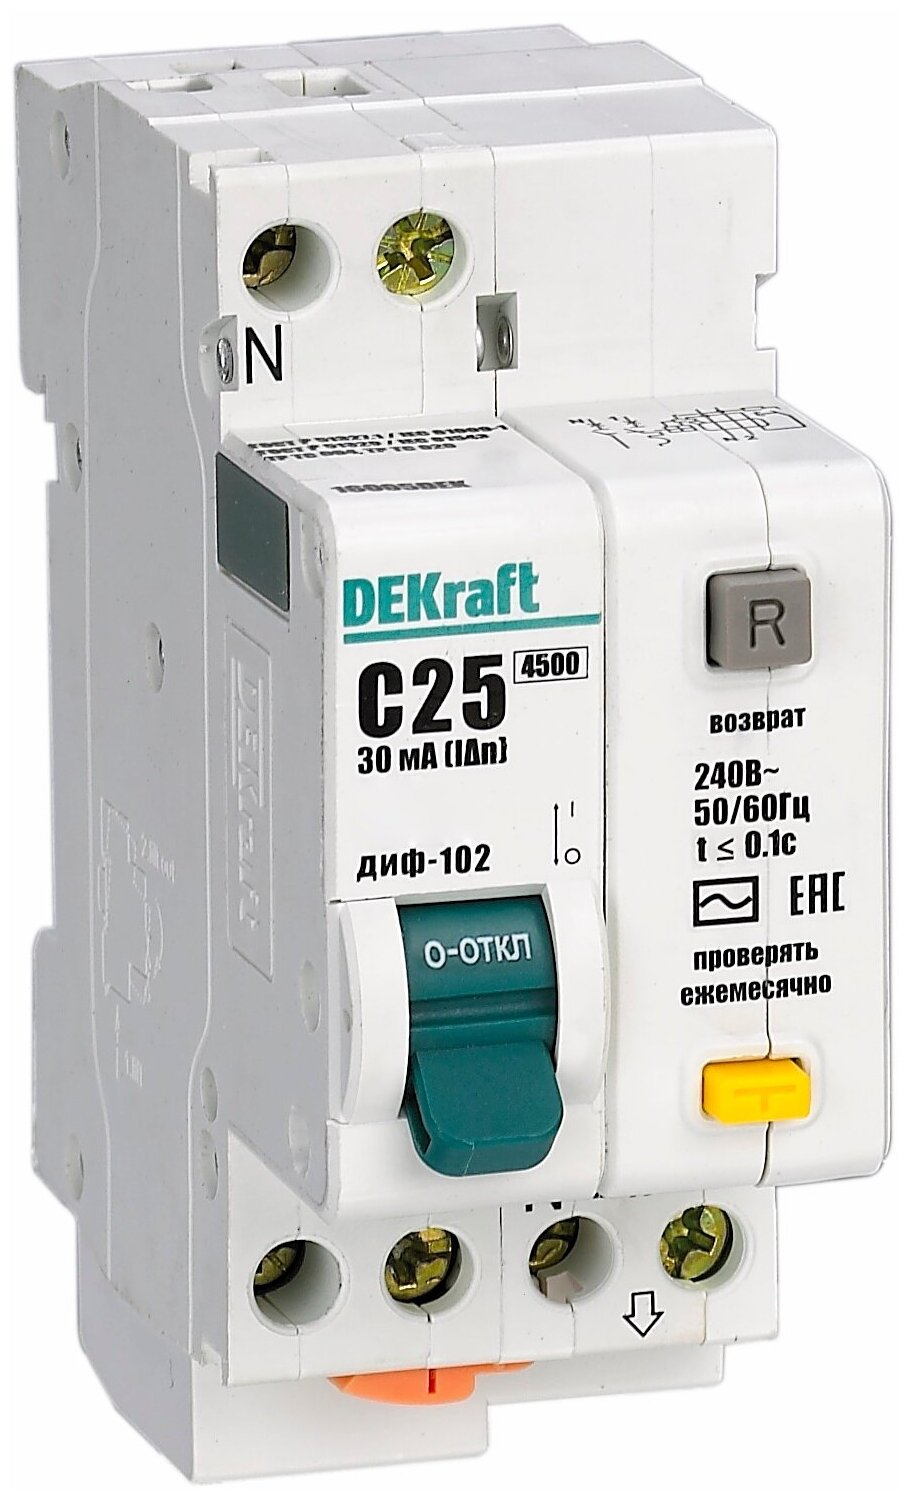 ДИФ-102 дифференциальный автоматический выключатель 1P+N, 25А, 30mA, тип AC, 4,5kA (хар-ка C) DEKraft, 16005DEK